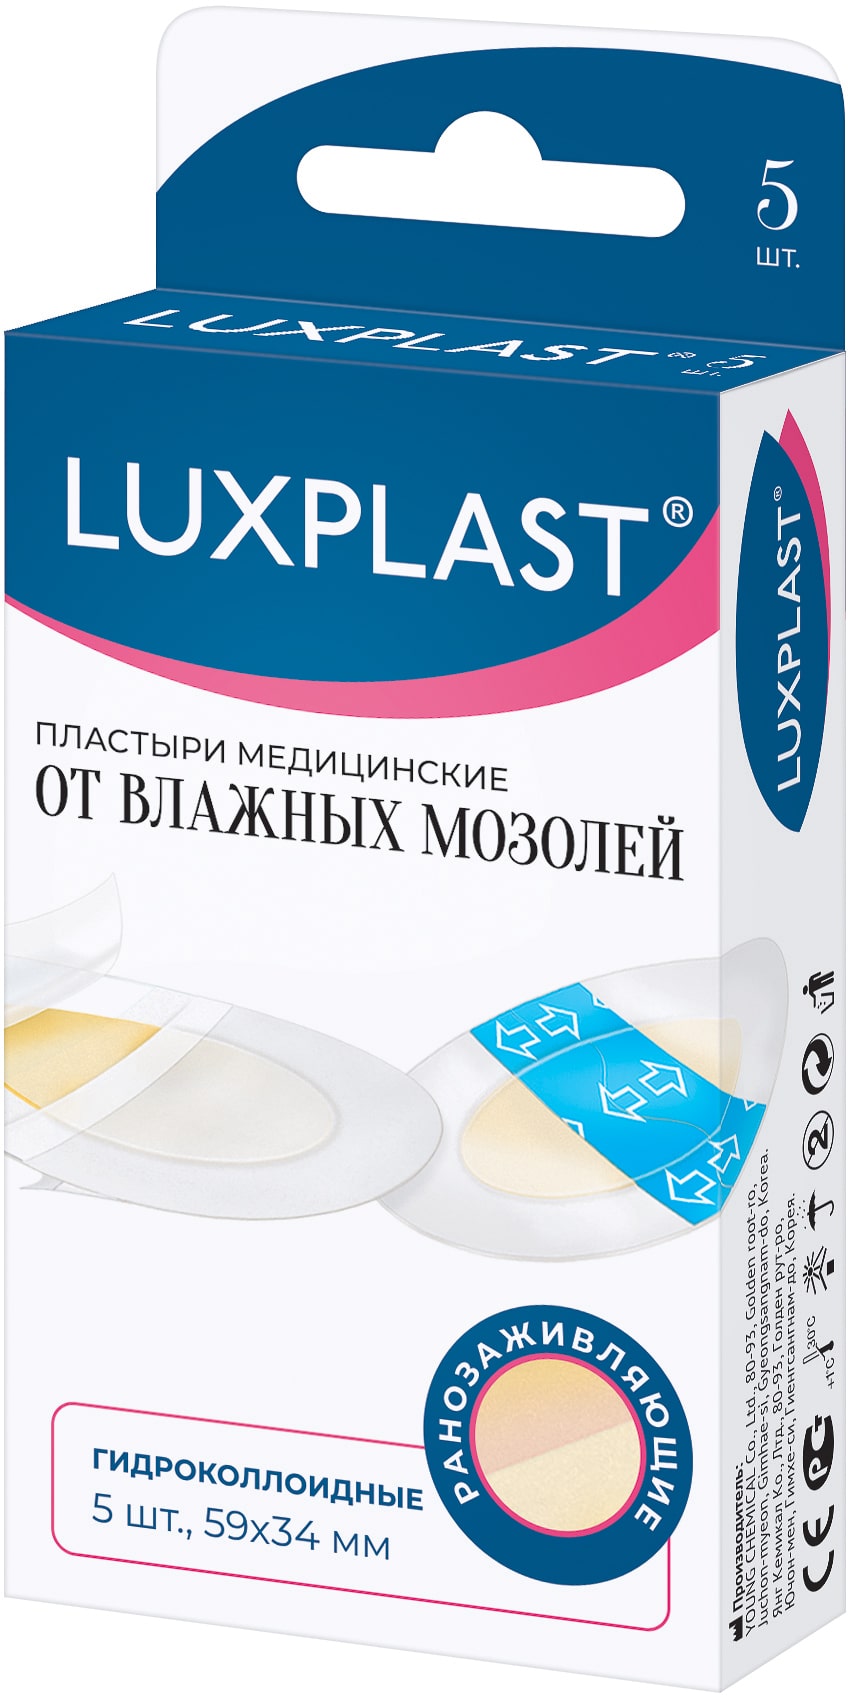 Luxplast Пластыри медицинские гидроколлоидные от влажных мозолей 59х34 мм, 5 шт (Luxplast, Пластырь)